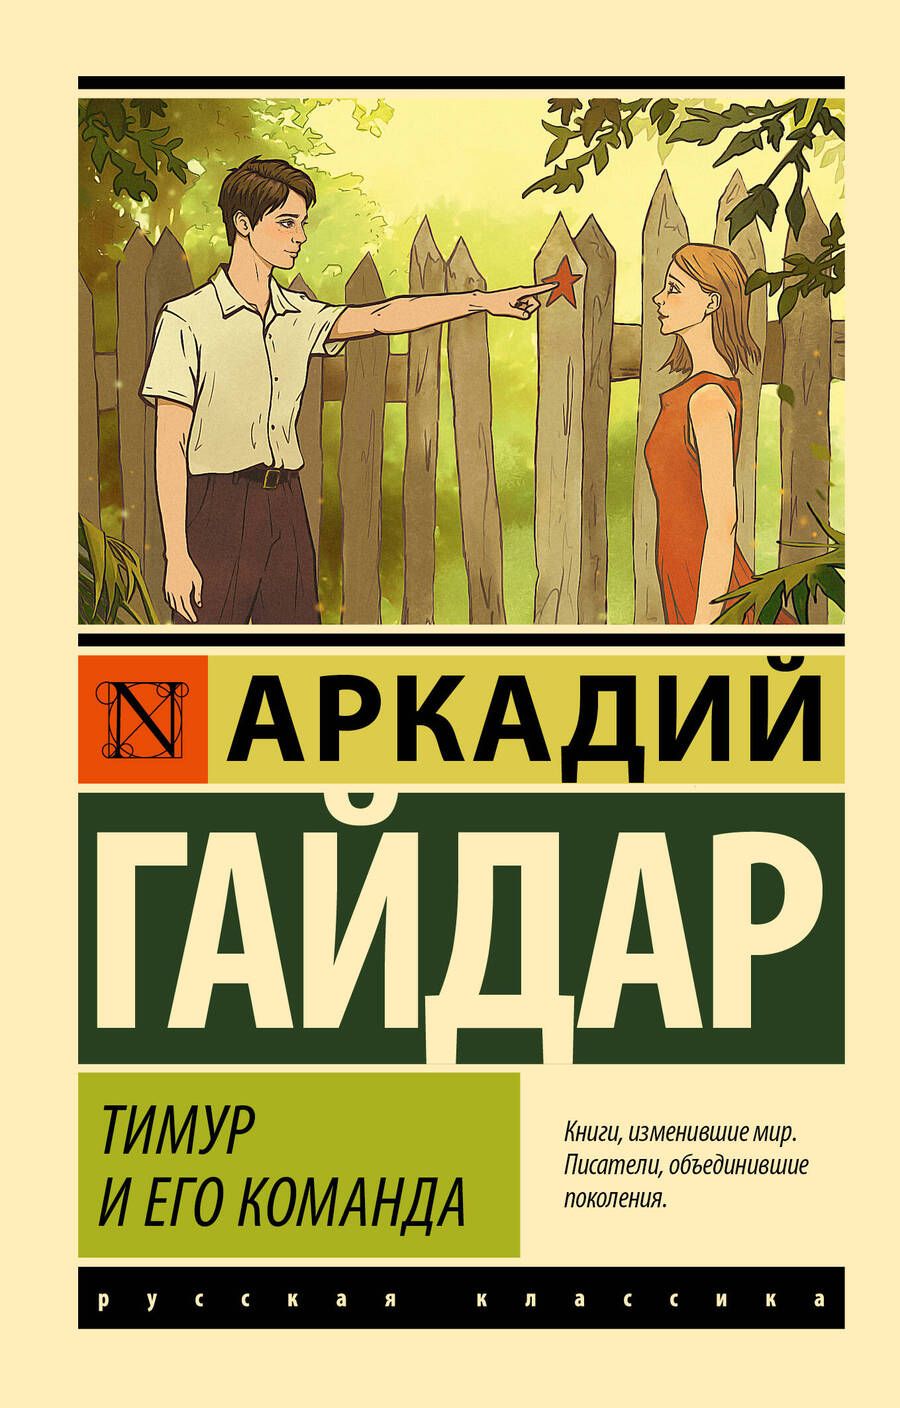 Обложка книги "Гайдар: Тимур и его команда"